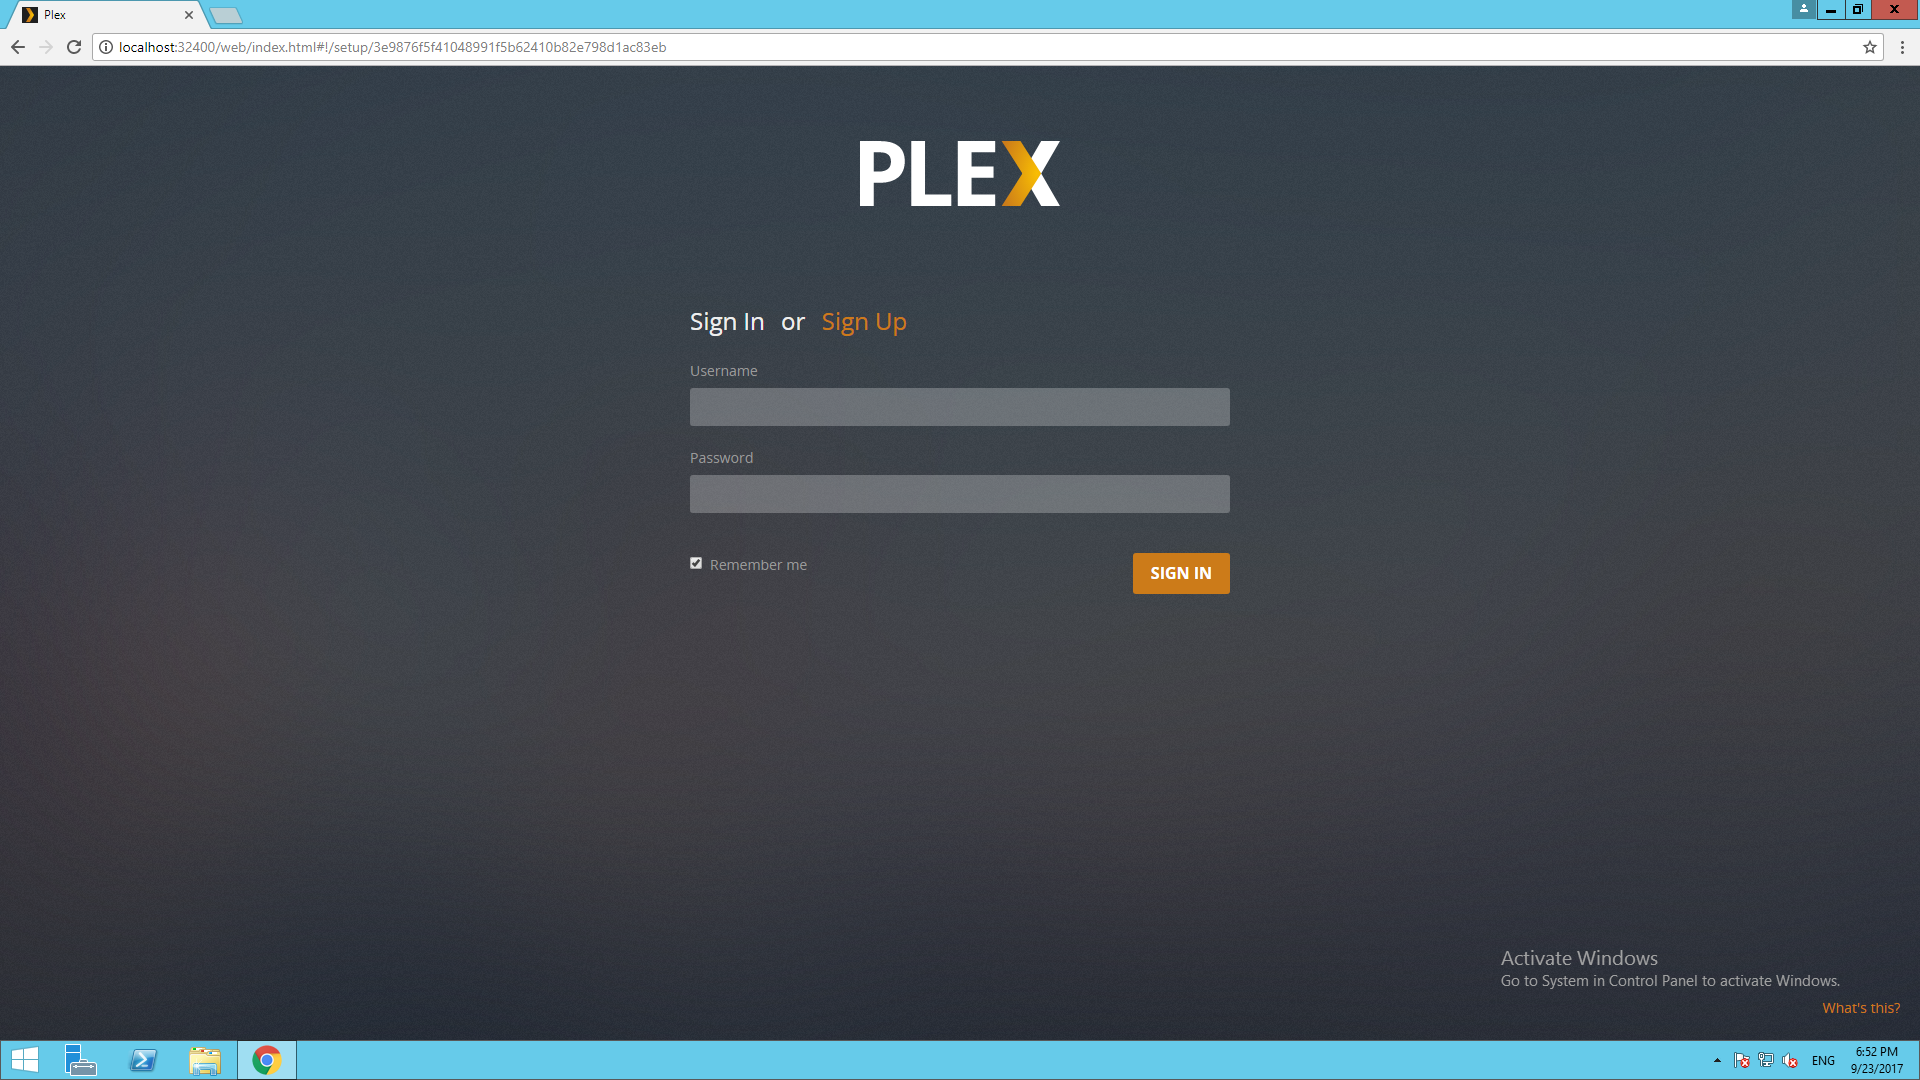 plex webtools 2.0